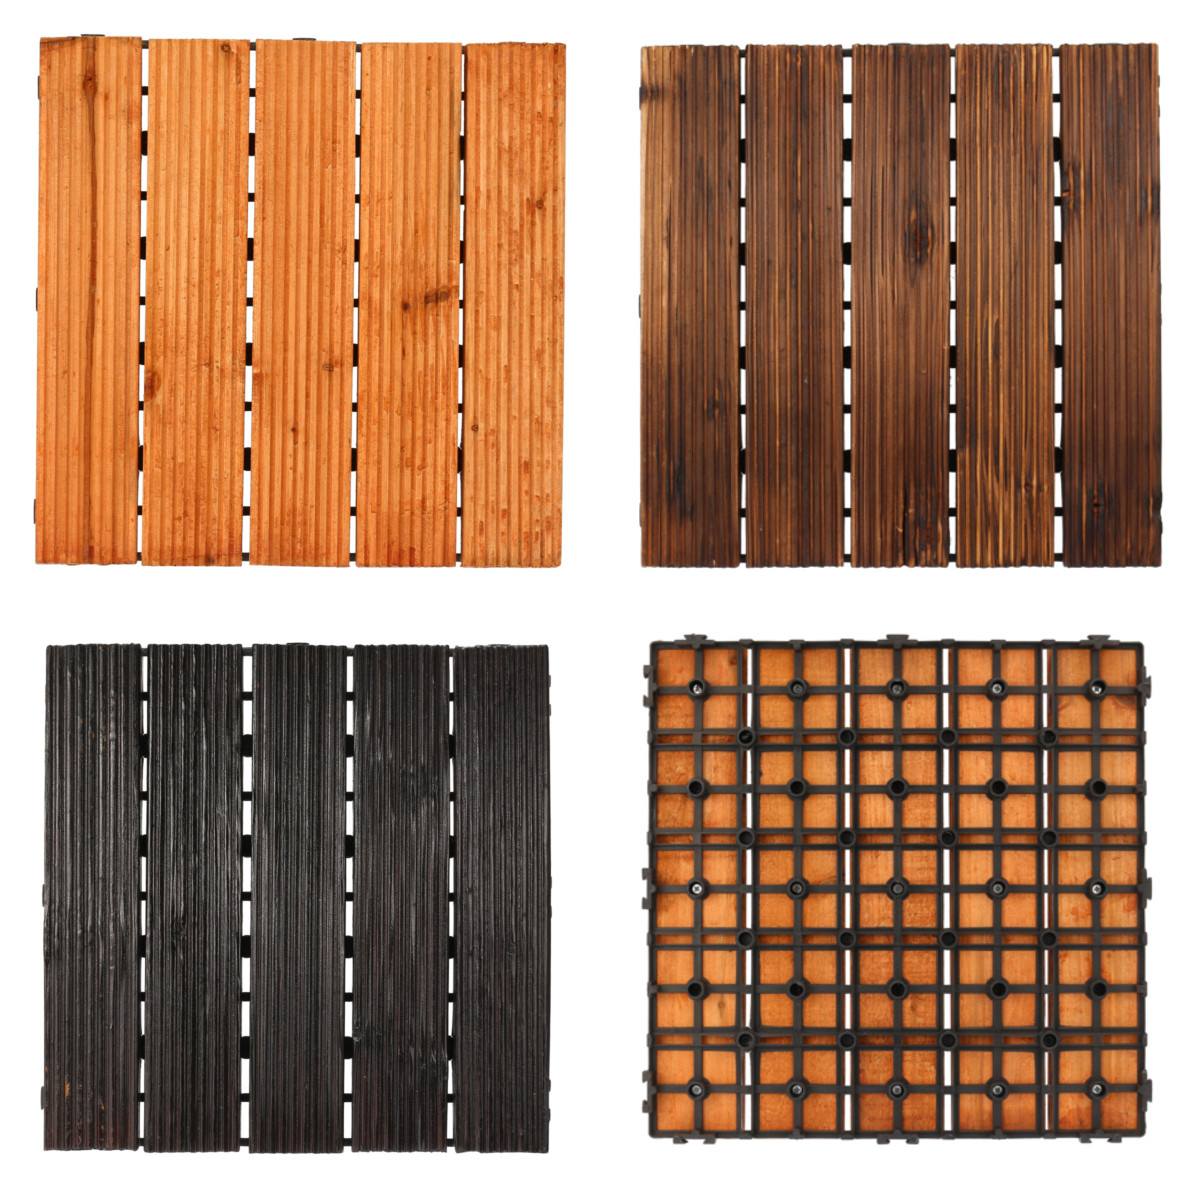 DIY Wood Patio Interlocking Flooring Decking Tile Indoor Outdoor Garden Floor Decoration Furniture Accessories 3 Colors 30x30cm